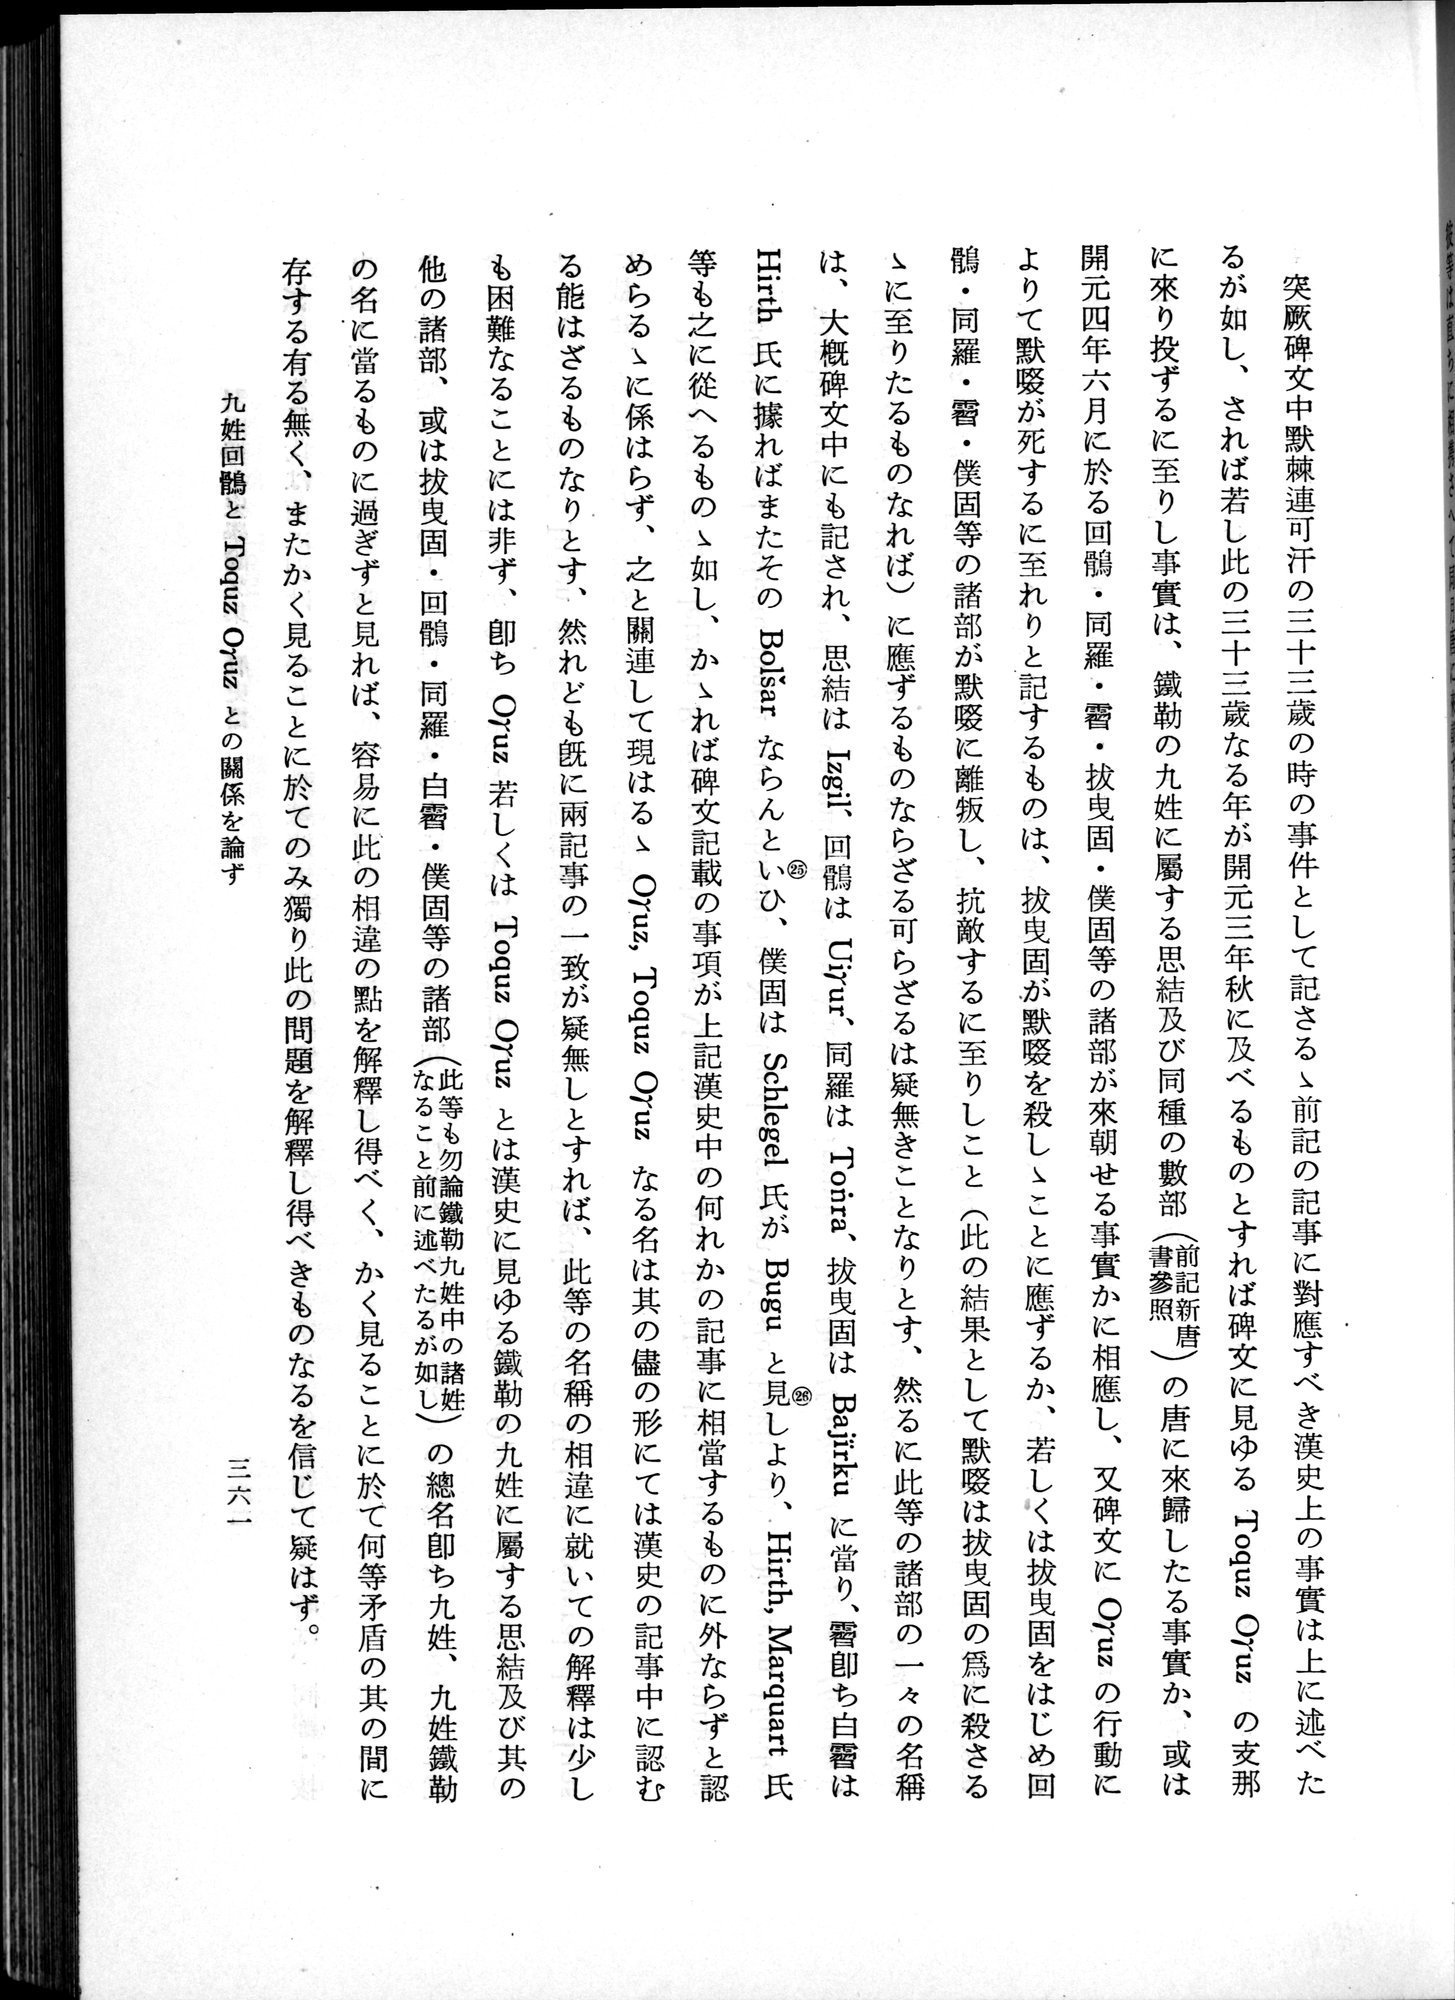 羽田博士史学論文集 : vol.1 / Page 399 (Grayscale High Resolution Image)